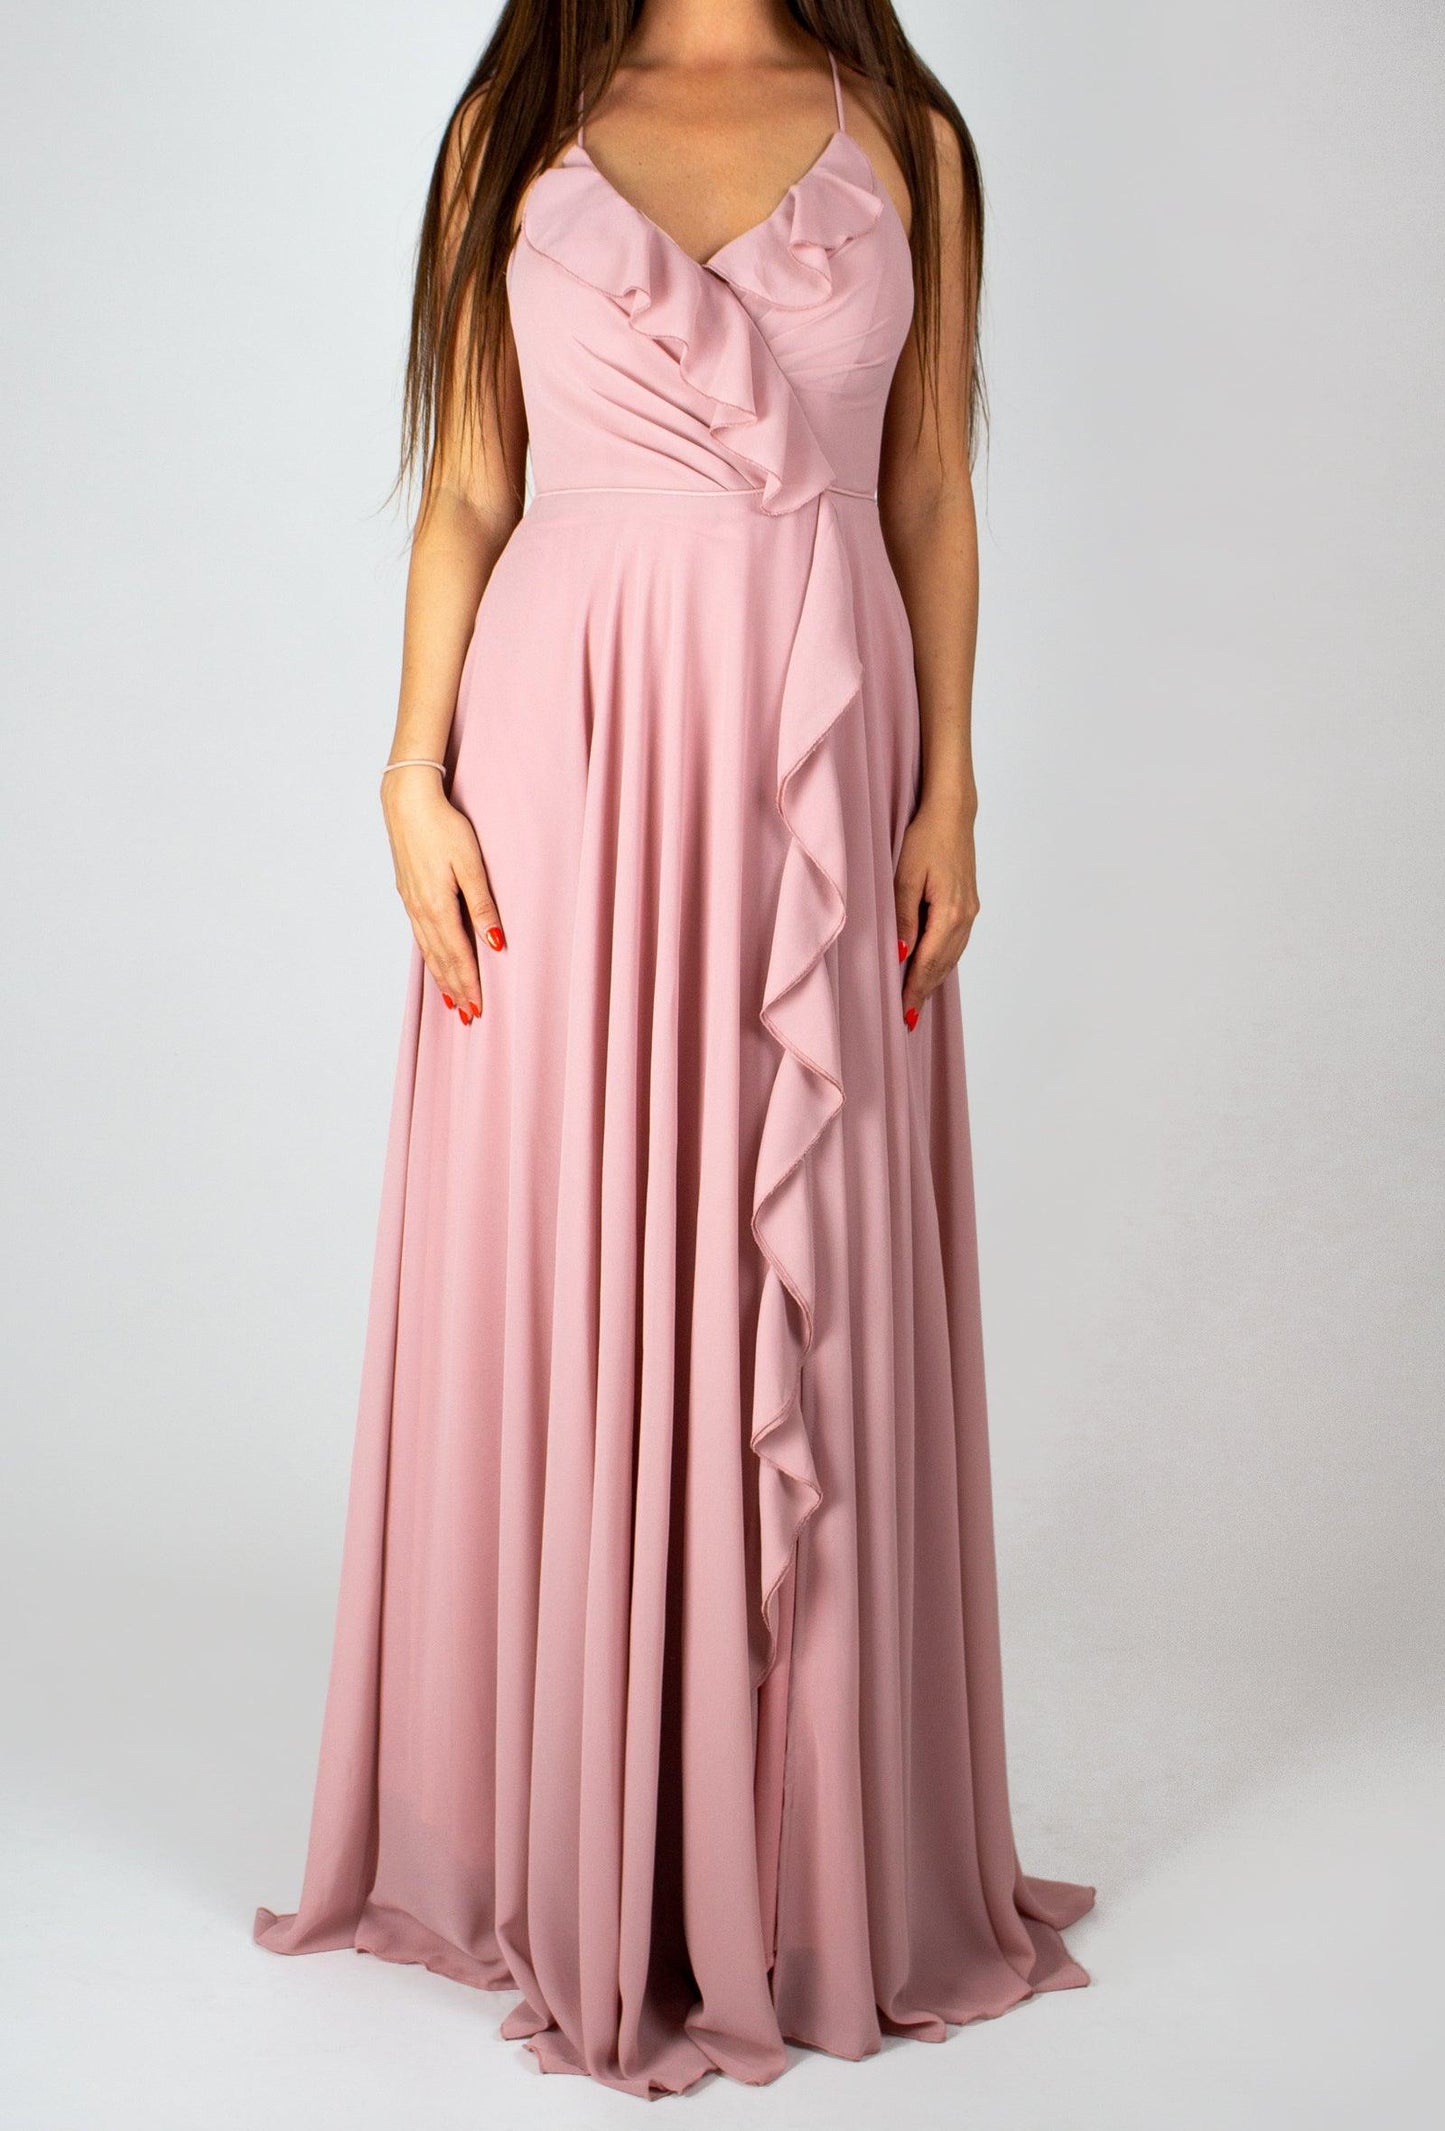 Rózsaszín maxiruha - Chili dresses - Ruha